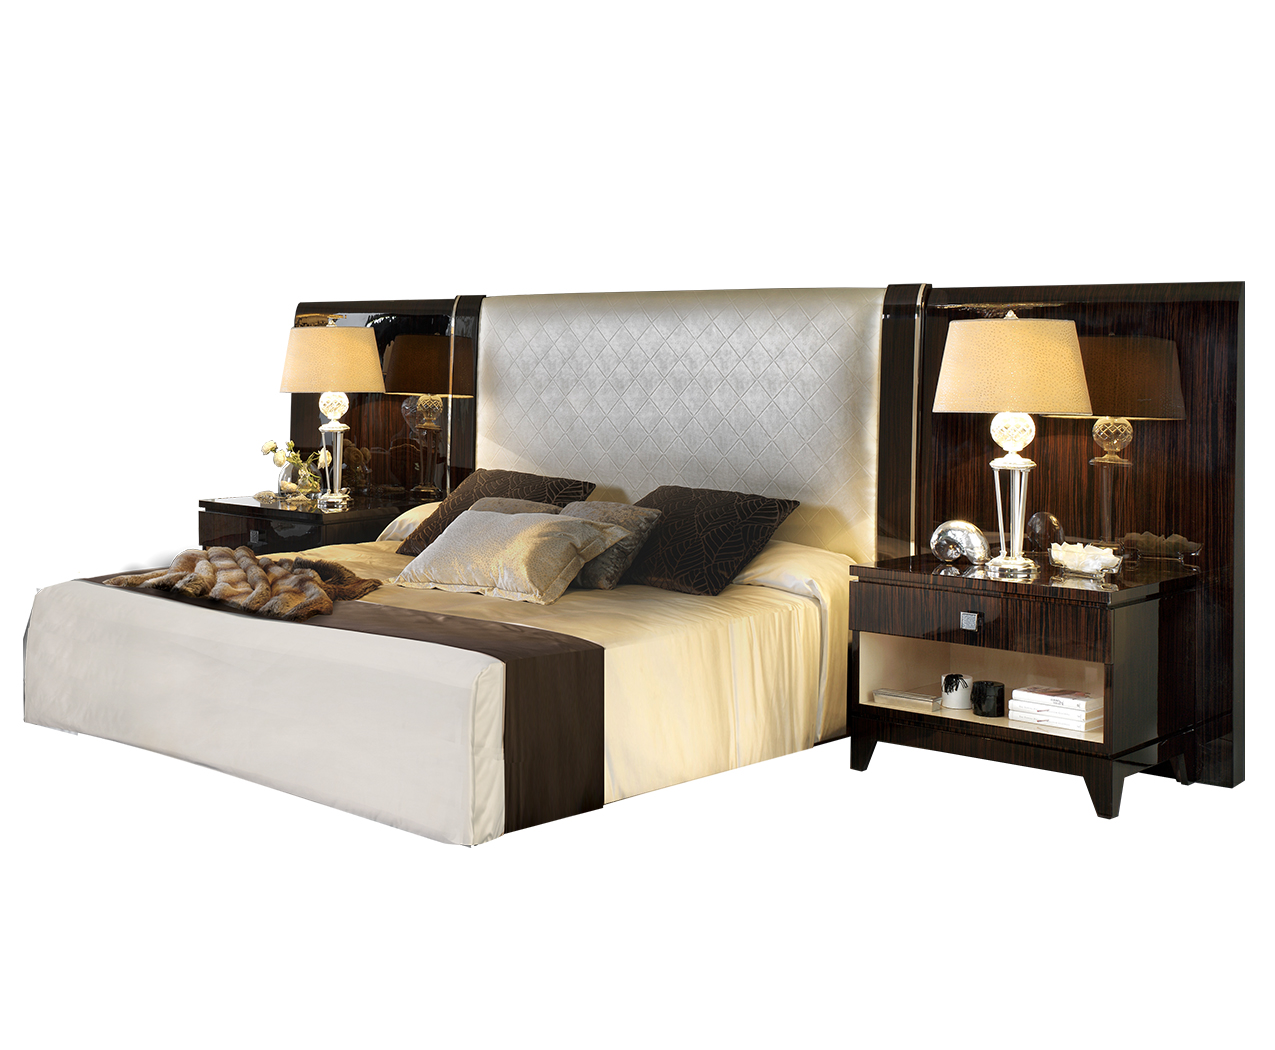 Luxury artdeco bedroom